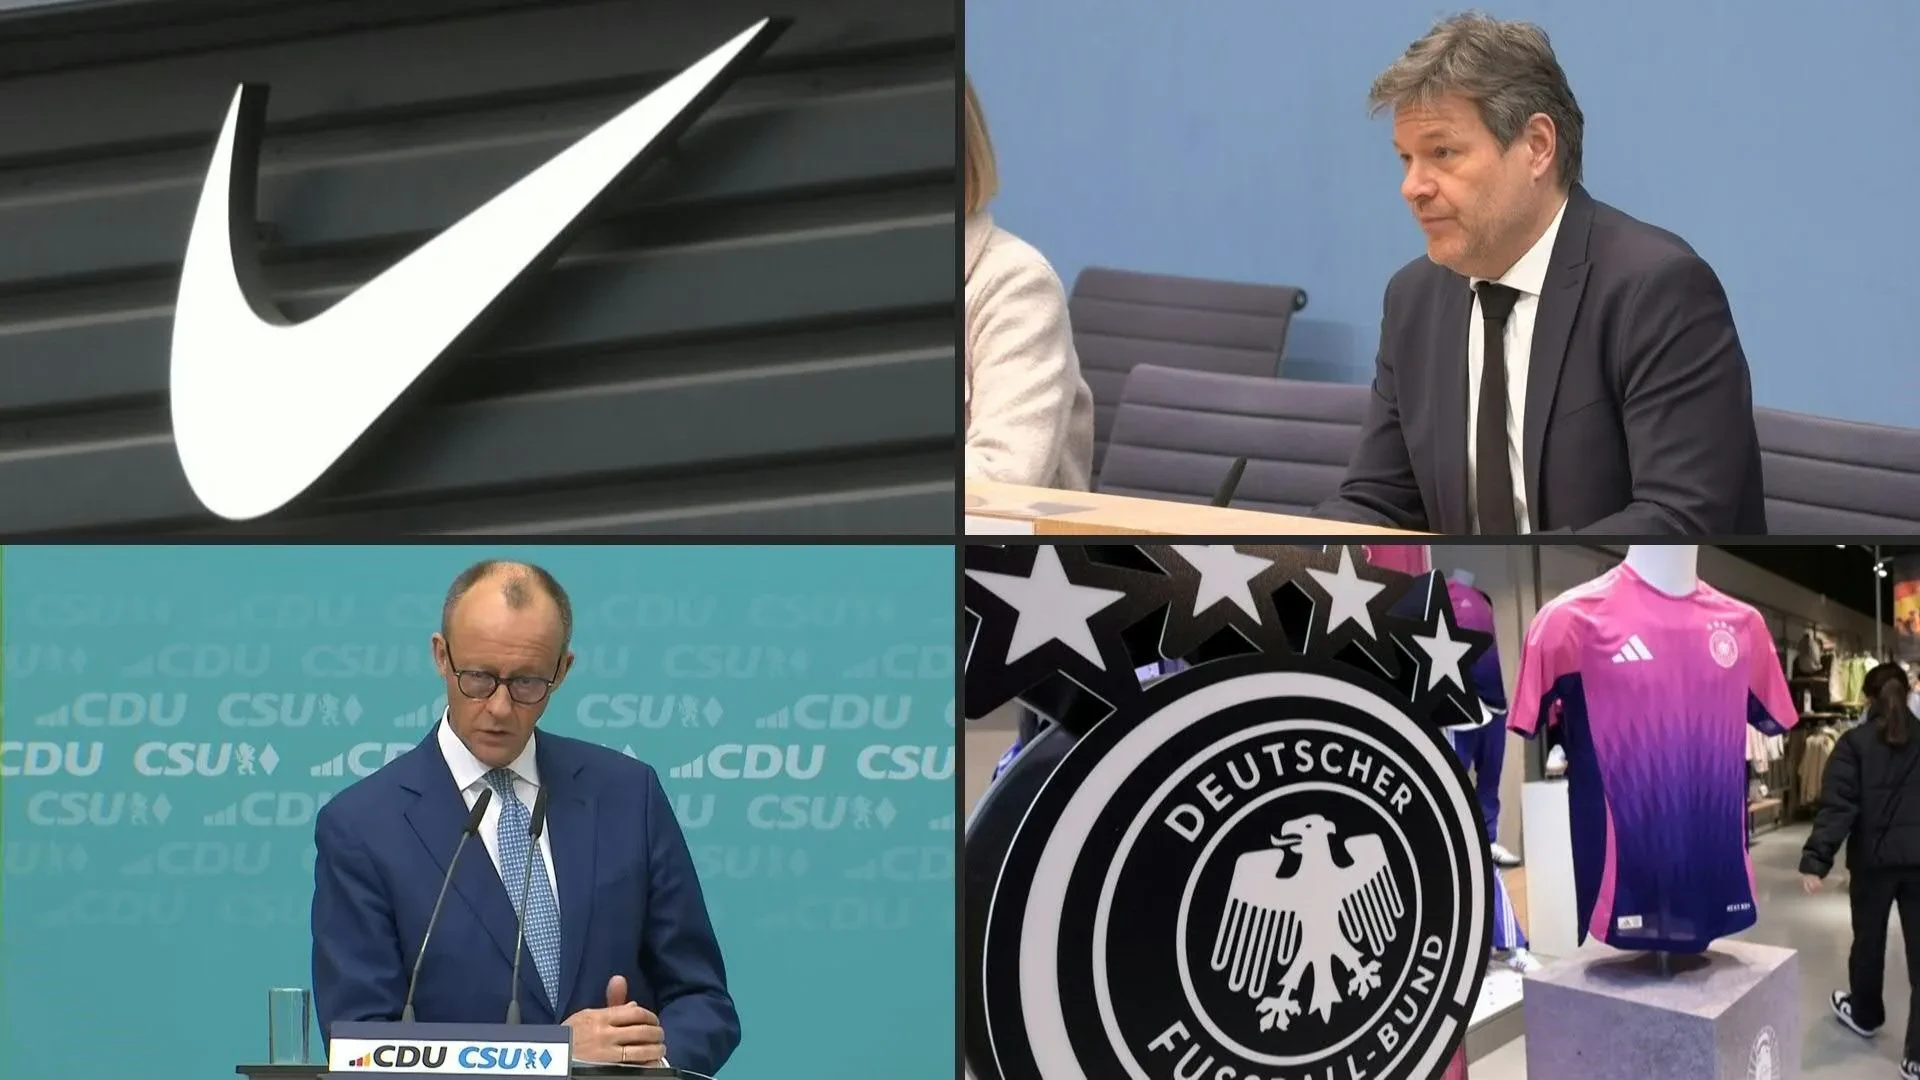 La décision de la Fédération allemande de football (DFB) d'équiper à l'avenir l'équipe nationale par l'entreprise américaine Nike au lieu d'Adidas a suscité des réactions consternées dans le monde politique allemand.